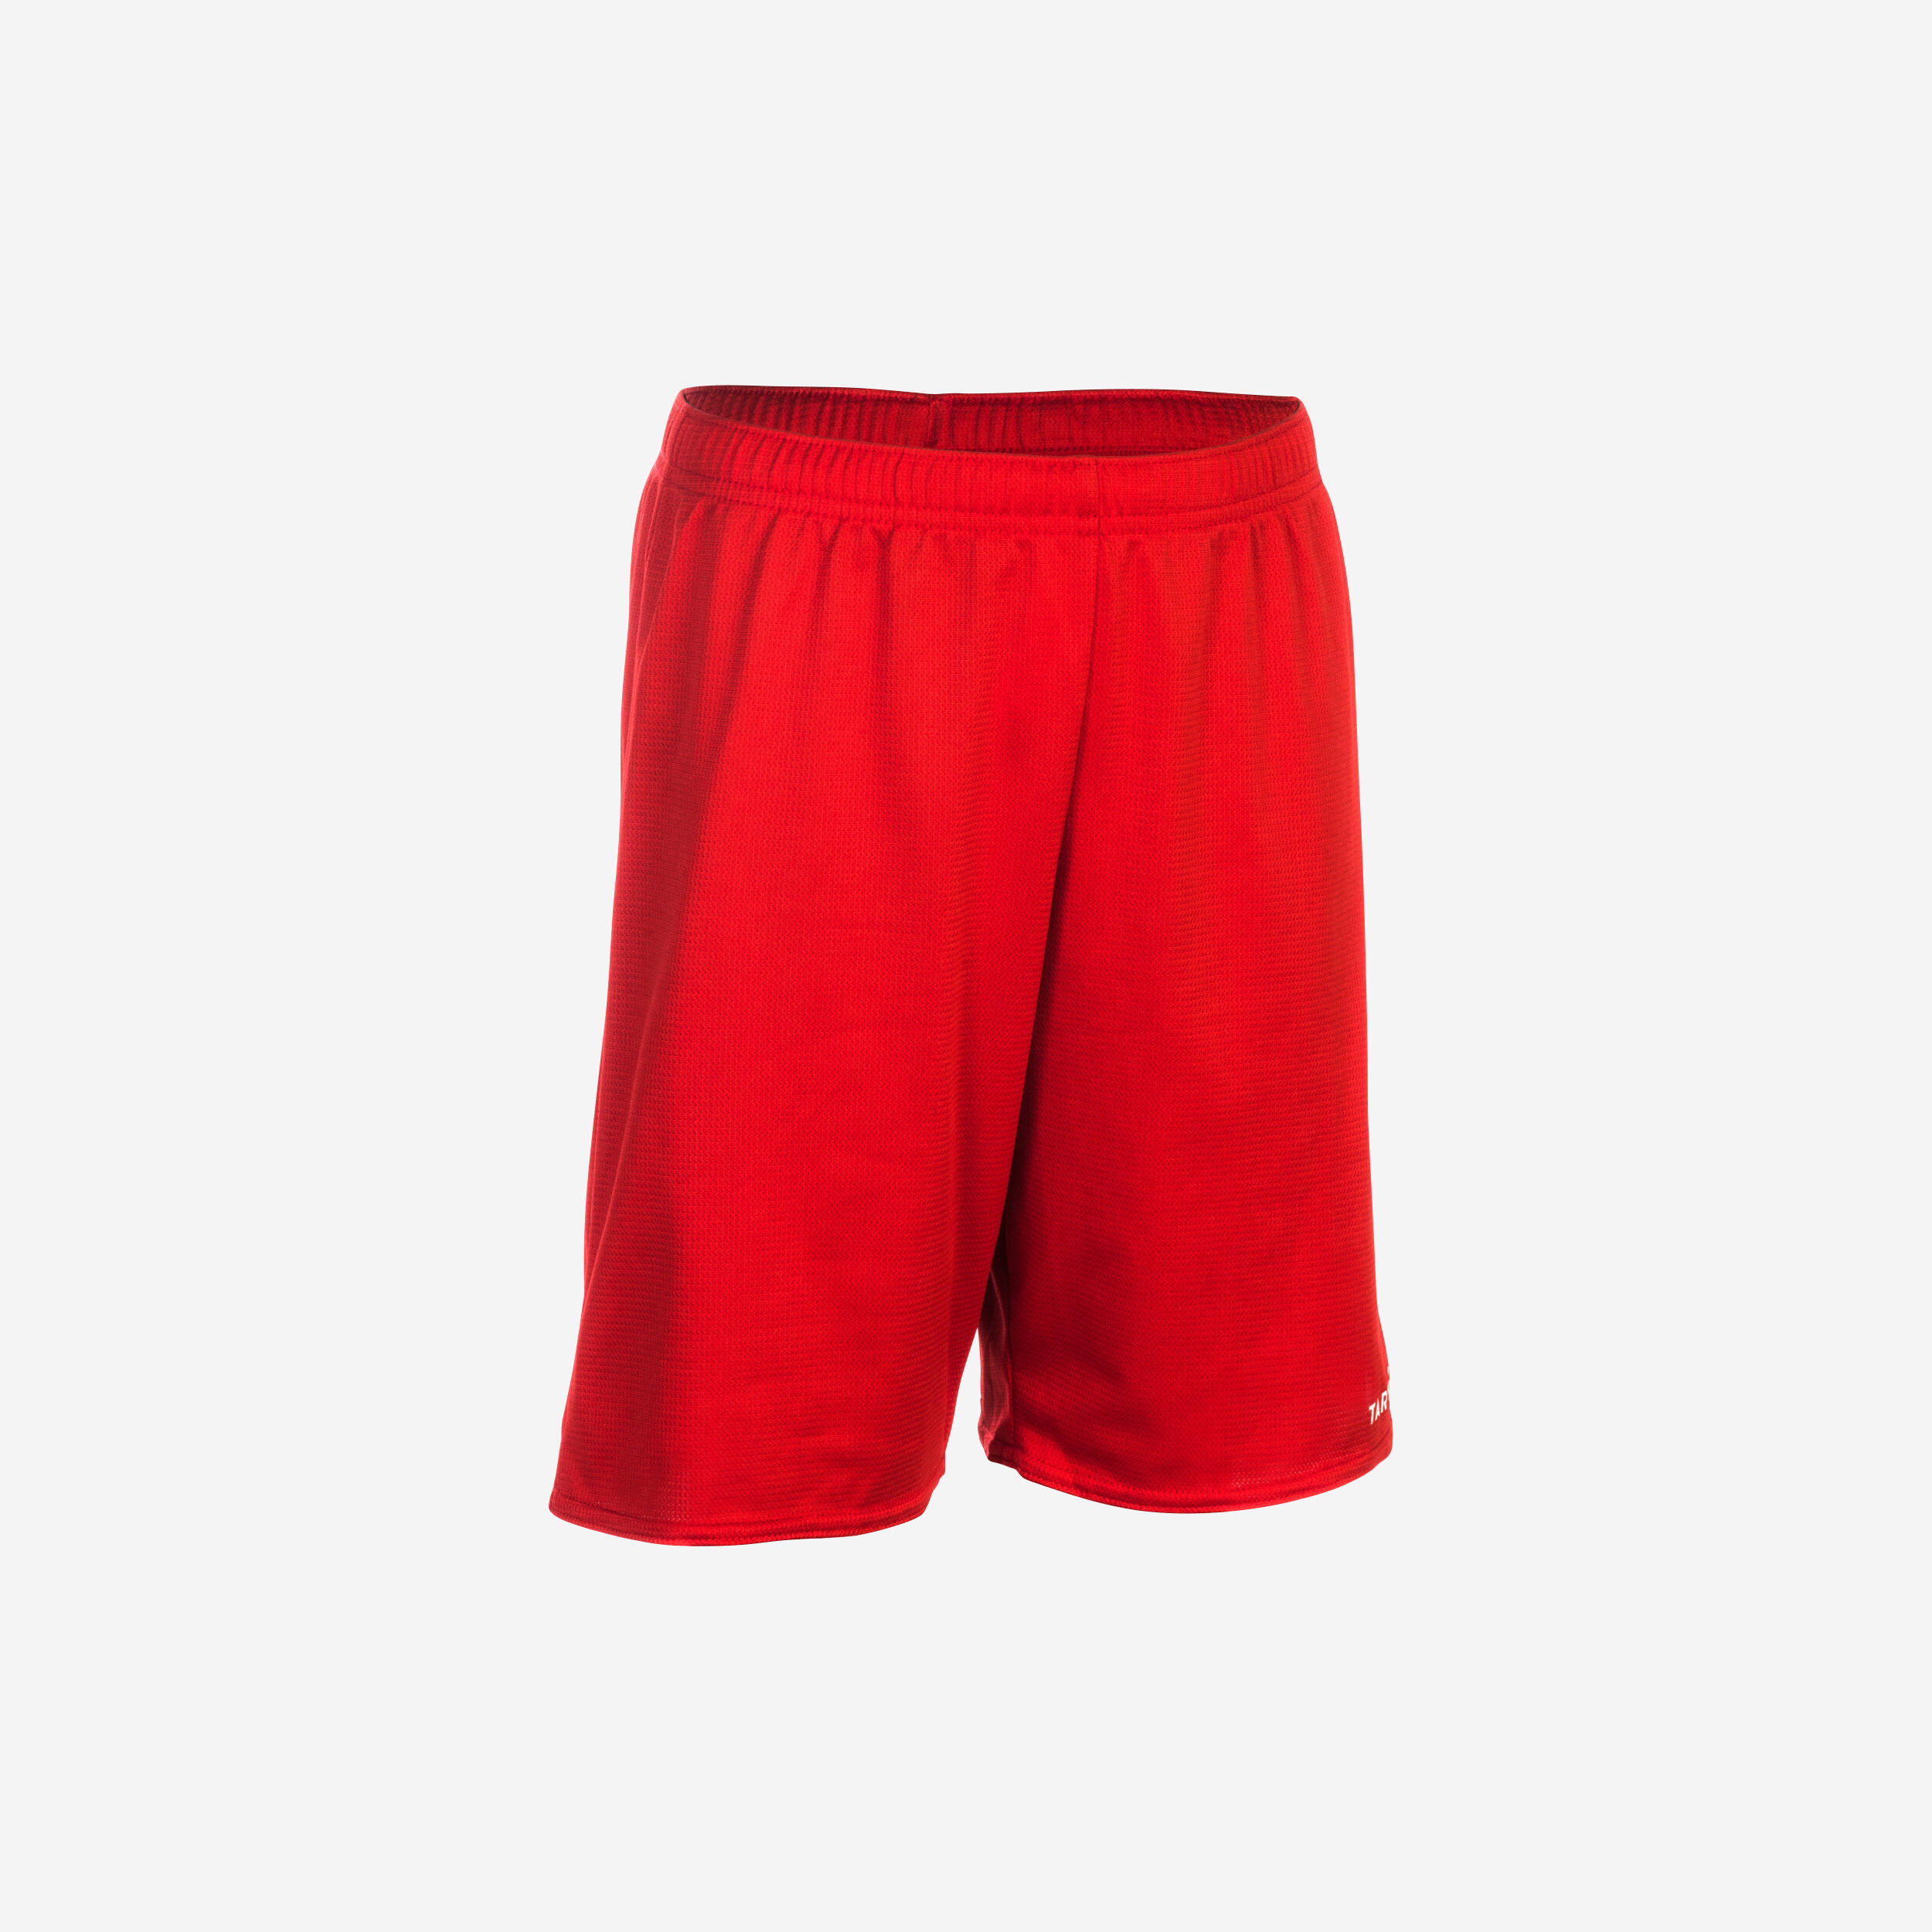 SH100 Boys'/Girls' Beginner Basketball Shorts - Red 1/1